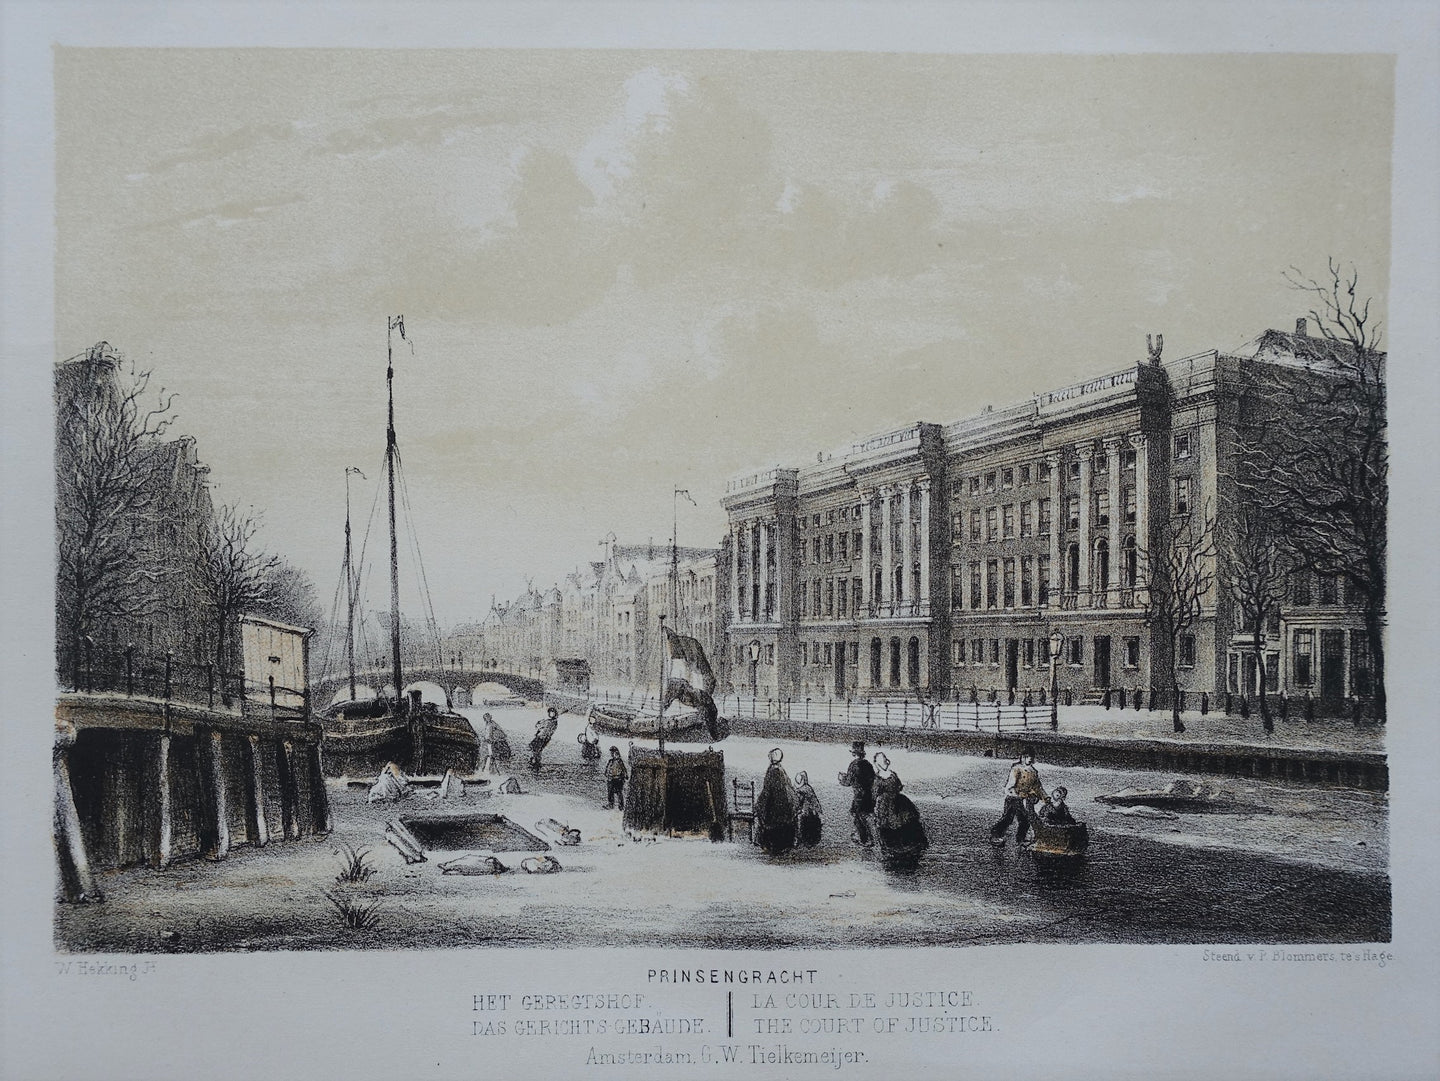 Amsterdam Prinsengracht Gerechtshof Wintergezicht - W Hekking jr/ GW Tielkemeijer - 1861